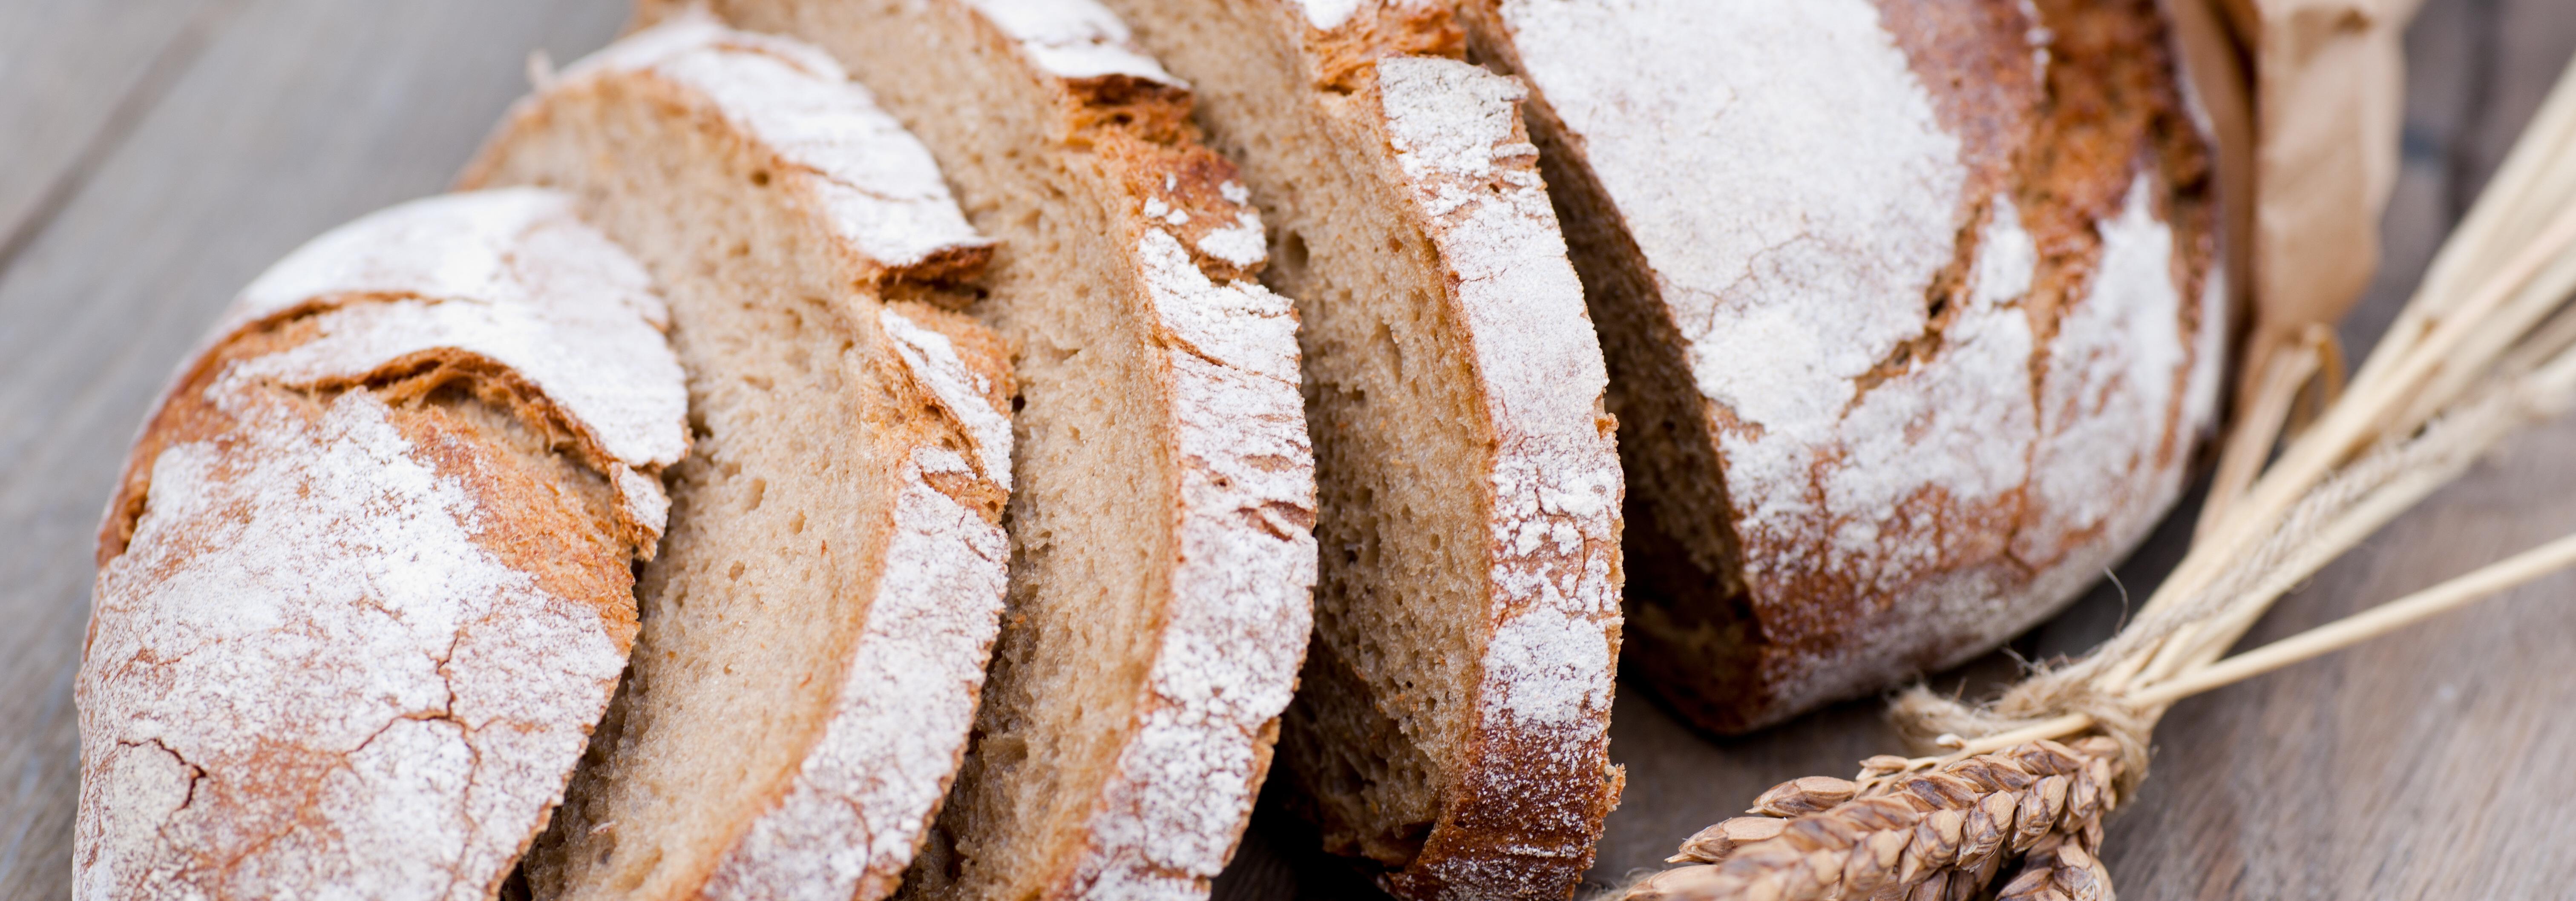 Einblicke: So wird knuspriges Brot hergestellt - Österreich isst informiert